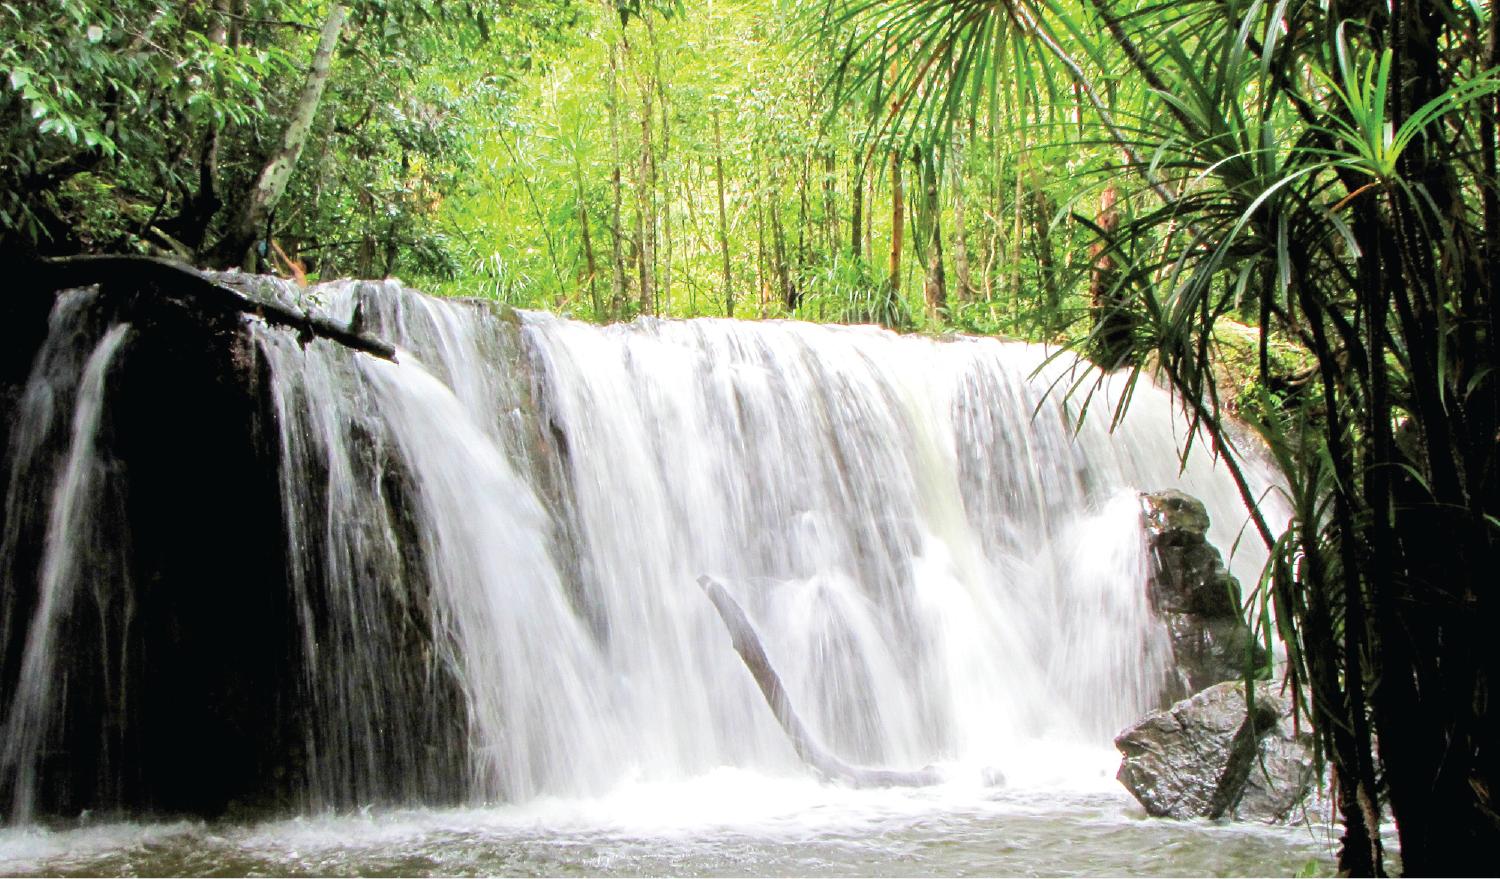 cascade Tranh, ile de phu quoc vietnam